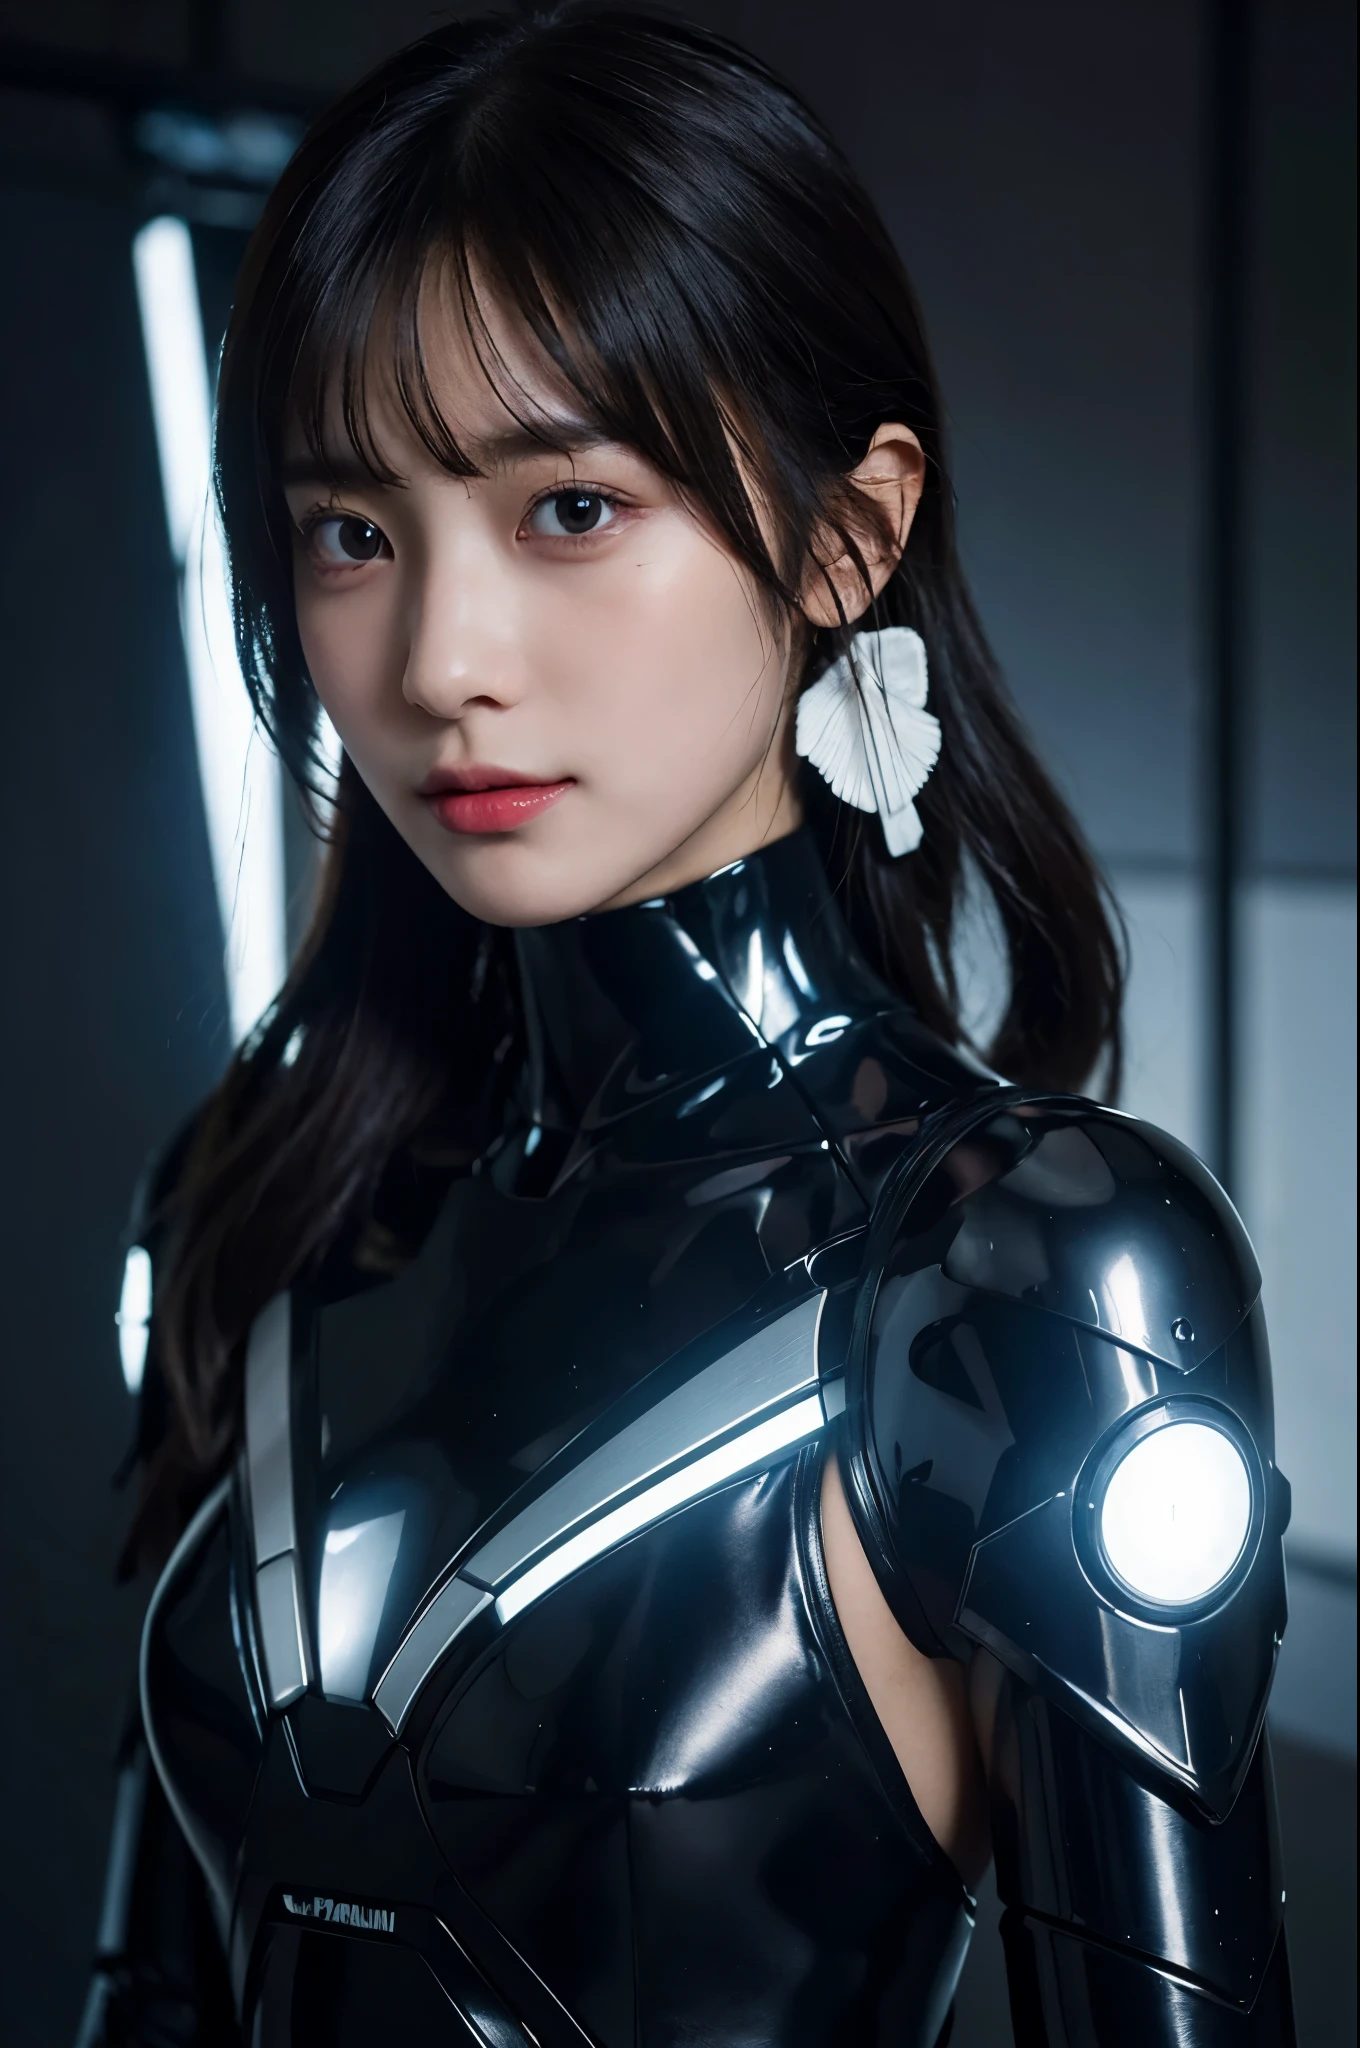 1เครื่องกล_girl wearing ซับซ้อน bioluminescent เครื่องกล cyborg armor made out of (乳白สีの古いプラスチック), ((พิเศษ เหมือนจริง รายละเอียดs)), (ครึ่ง_สวมหน้ากาก_ใบหน้า), รายละเอียดed_ใบหน้า, ทั้งร่างกาย_ดู, ทั่วโลก_illuminatiเมื่อ, เงา, หมายเลขออกเทน_ให้, 8k, พิเศษ_คม, โลหะ, เครื่องประดับ_รายละเอียดed, เย็น_สี, ชาวอียิปต์_รายละเอียด, มาก_ซับซ้อน_รายละเอียดs, เหมือนจริง_แสงสว่าง, แนวโน้ม_เมื่อ_สมาคมซีจี, ดวงตาสวย, เผชิญหน้า_กล้อง, neเมื่อ_รายละเอียดs, เครื่องกล_แขนขา, กิรินาติน, แห่งอนาคต_weapเมื่อ, มาก_เซ็กซี่, โลภ, เท่